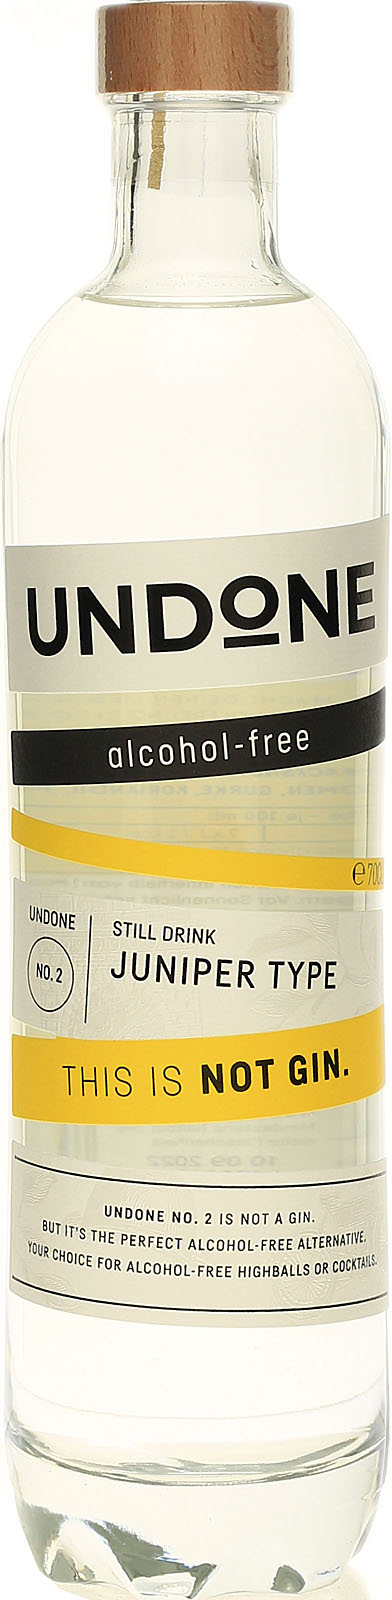 - Not Undone - 2 Gin kaufen No. hier Type Juniper